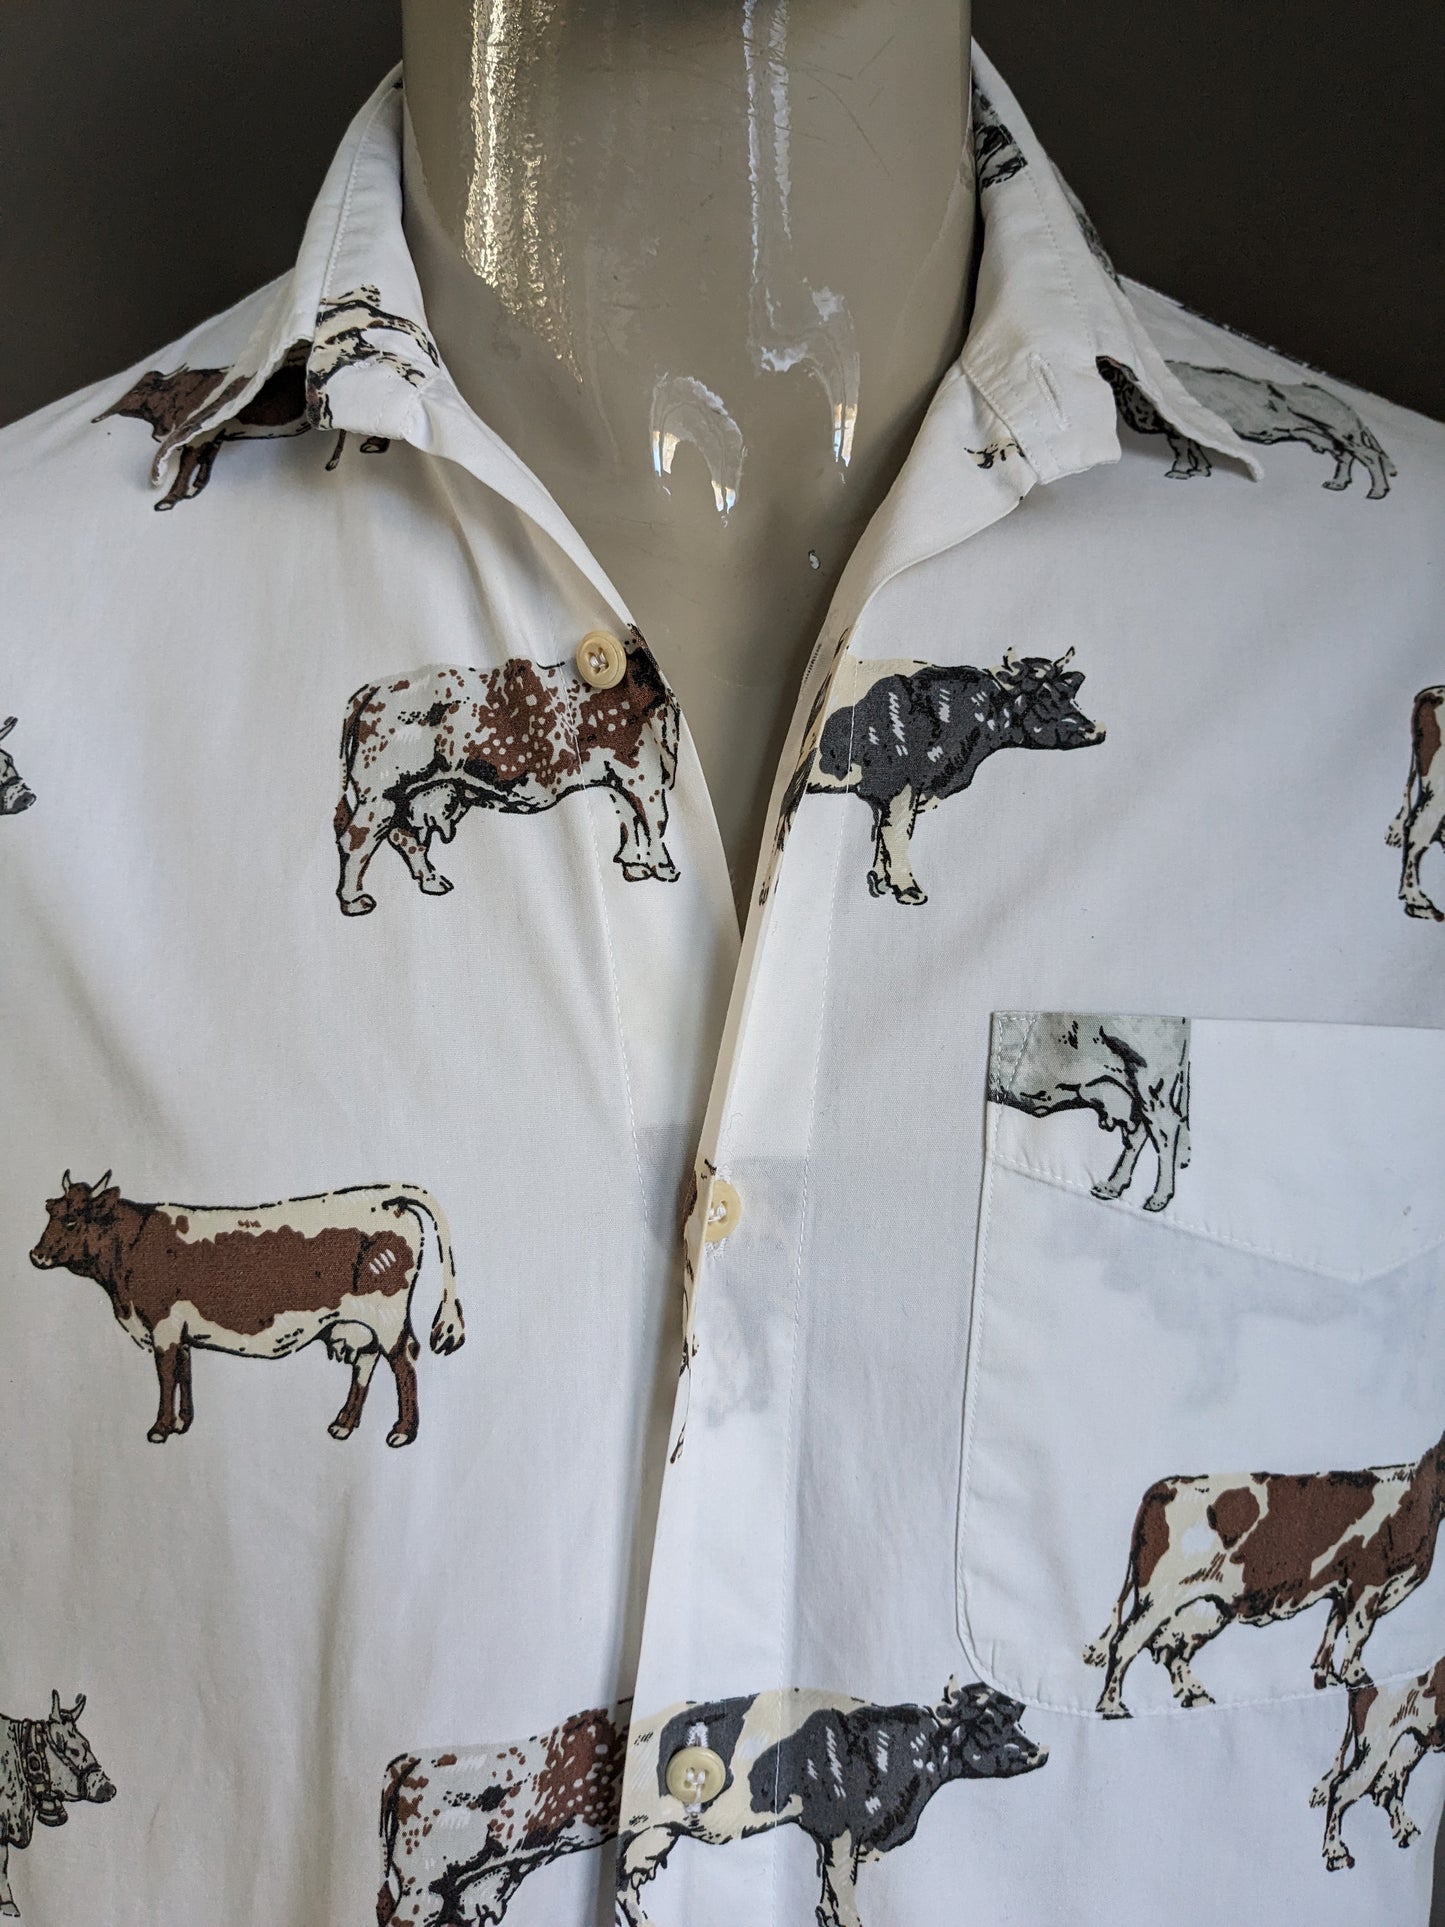 Vintage Nara Camice overhemd. Wit met Bruin Grijze koeien print. Maat L.